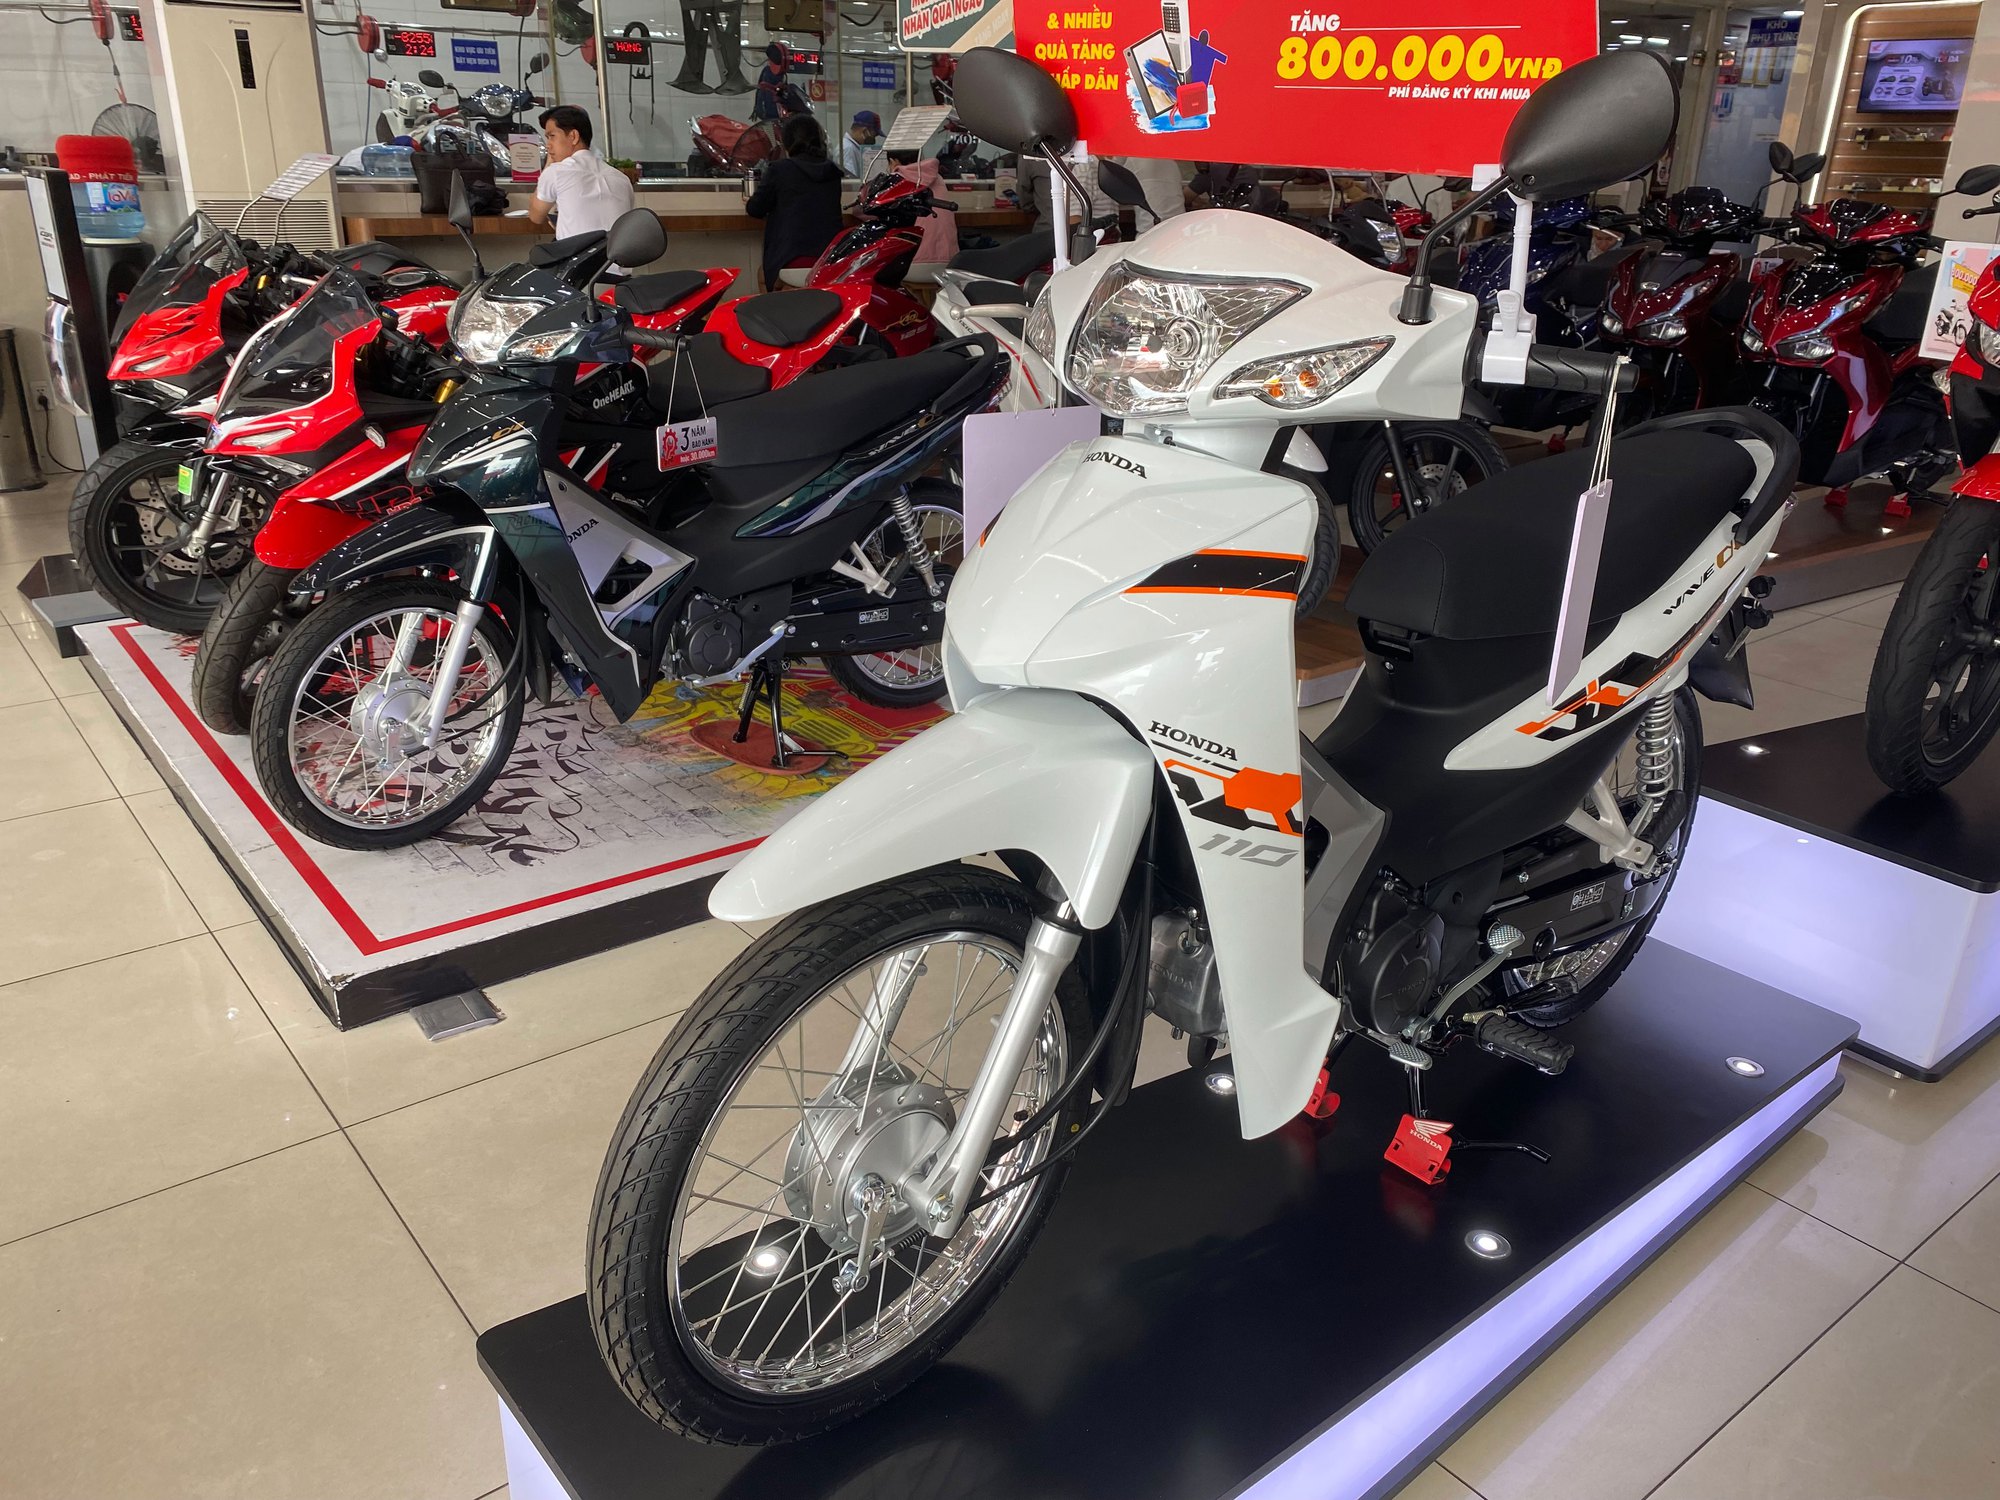 Hết ngáo giá Vision trở thành xe máy Honda hút khách nhất Việt Nam